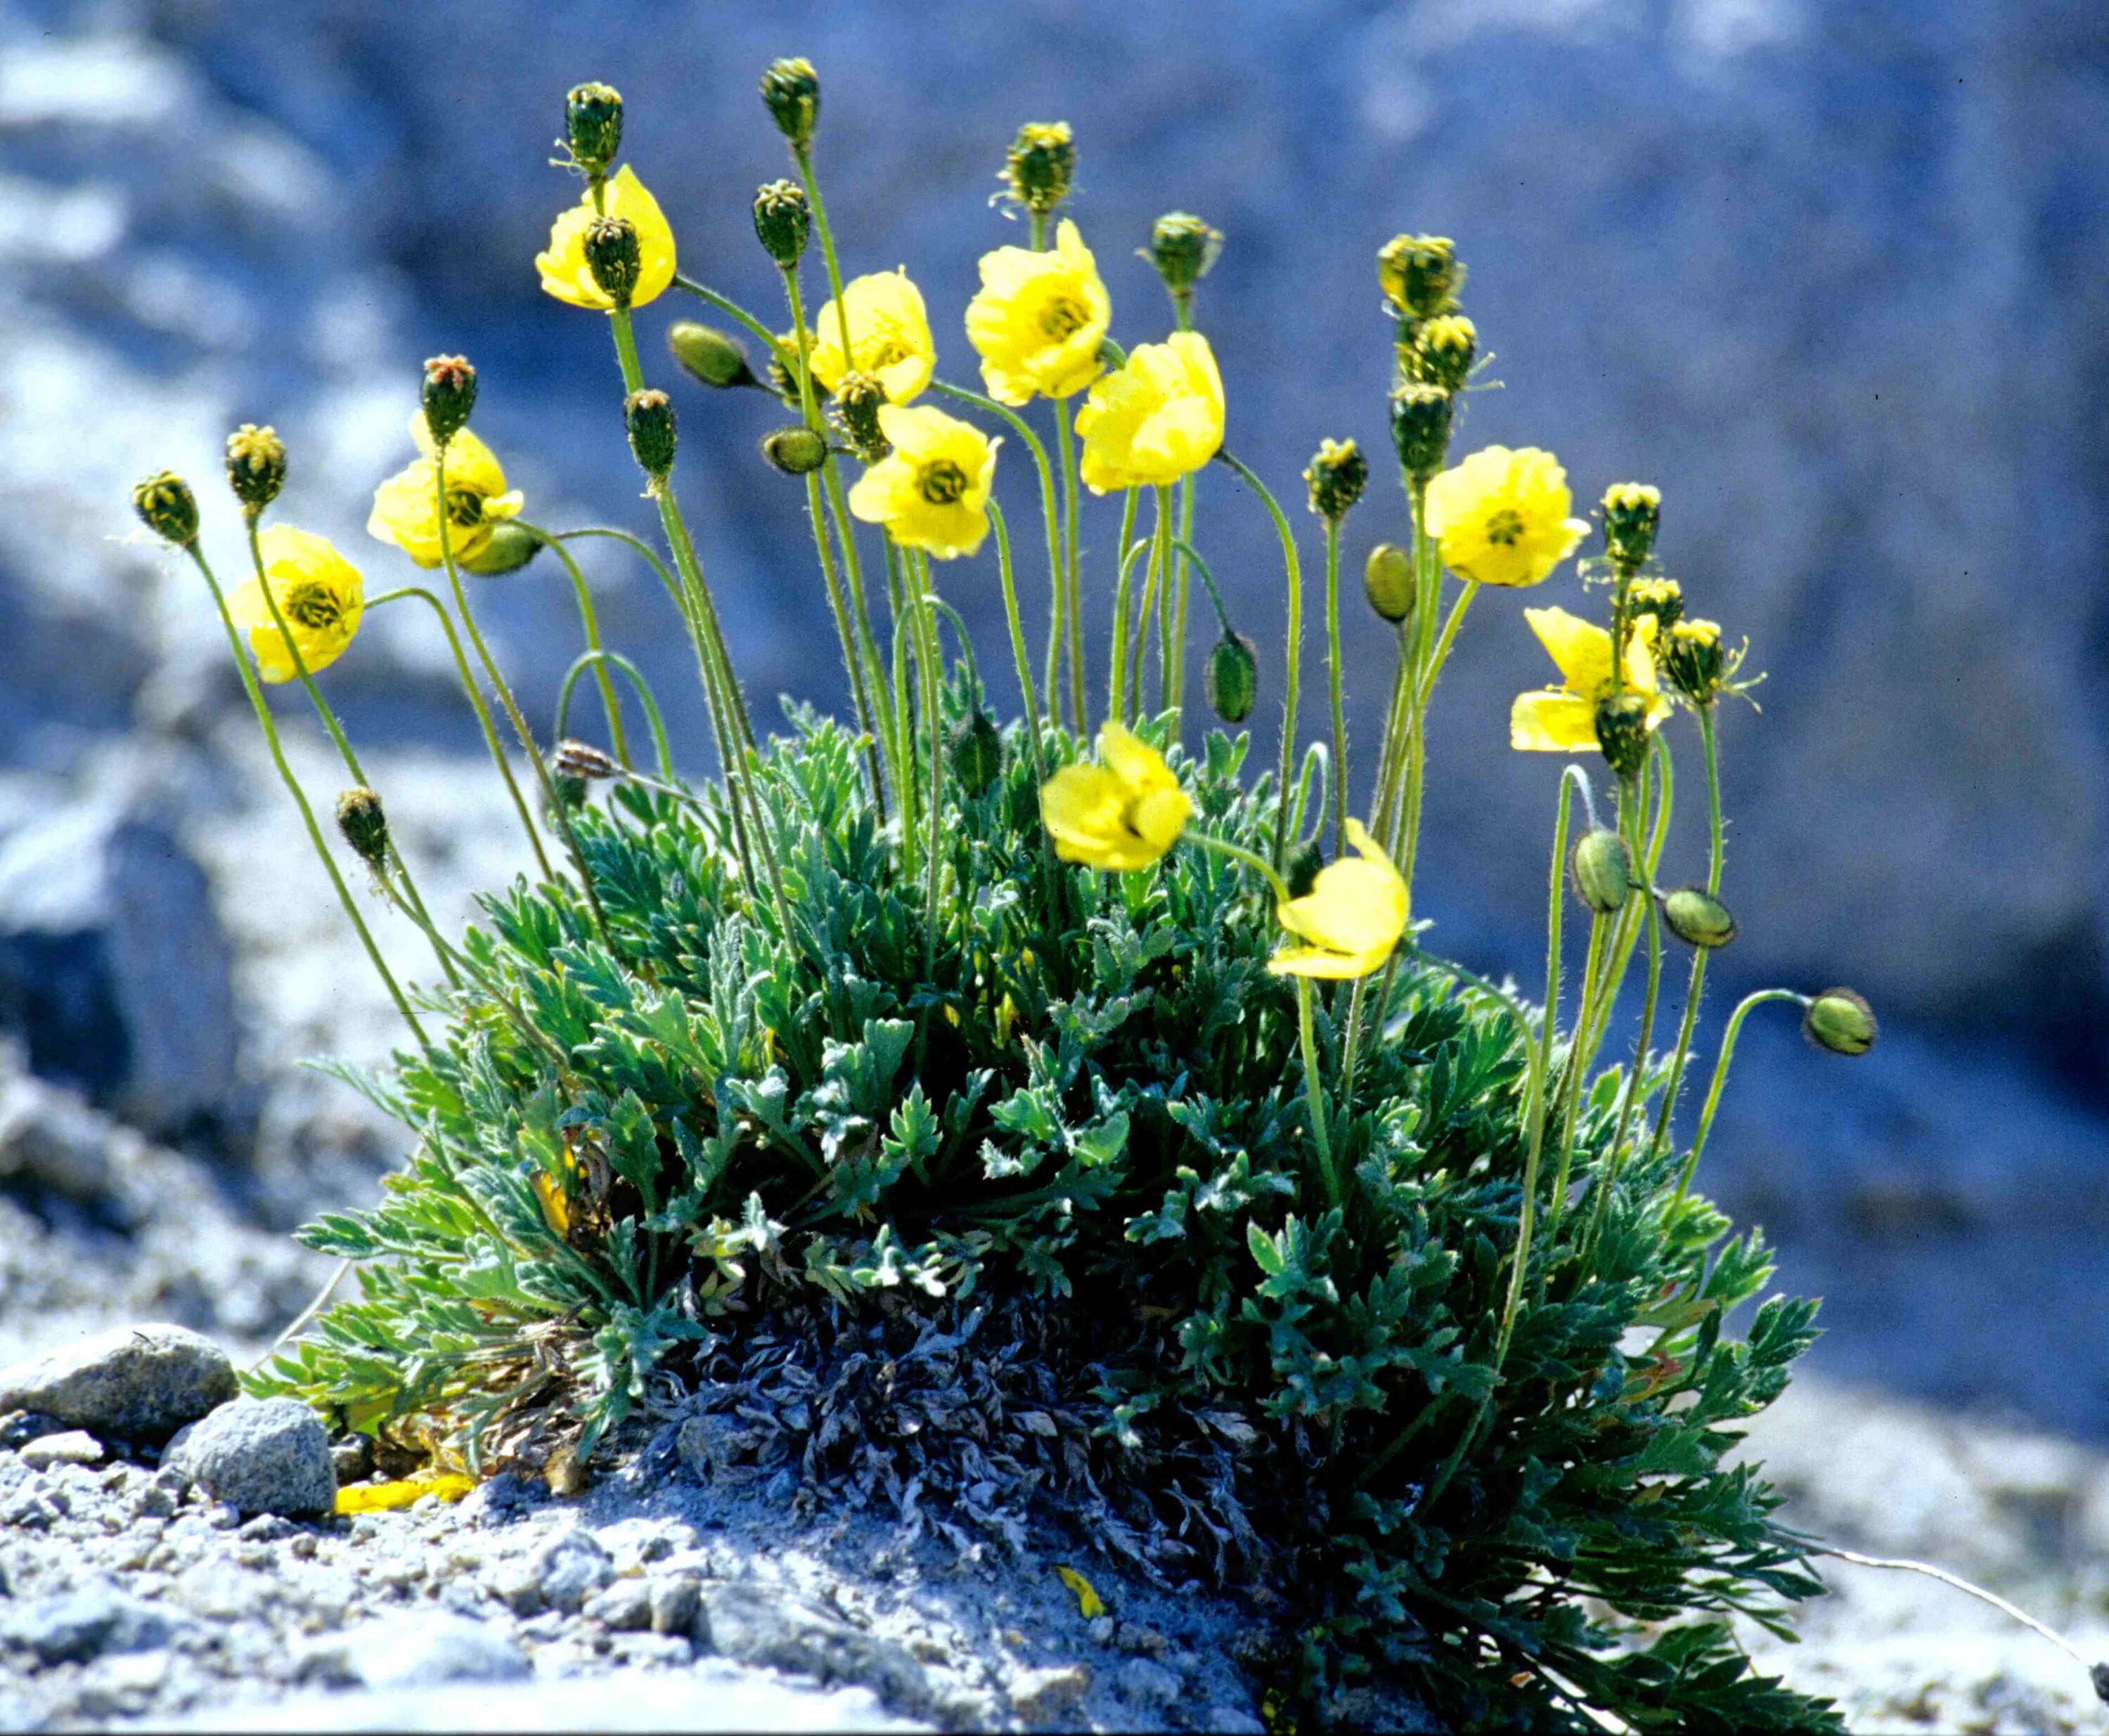 Выберите растения арктических пустынь. Лютик Лапландский. Мак Полярный (Papaver radicatum). Полярный Мак Лапландский. Полярный Мак арктических пустынь.